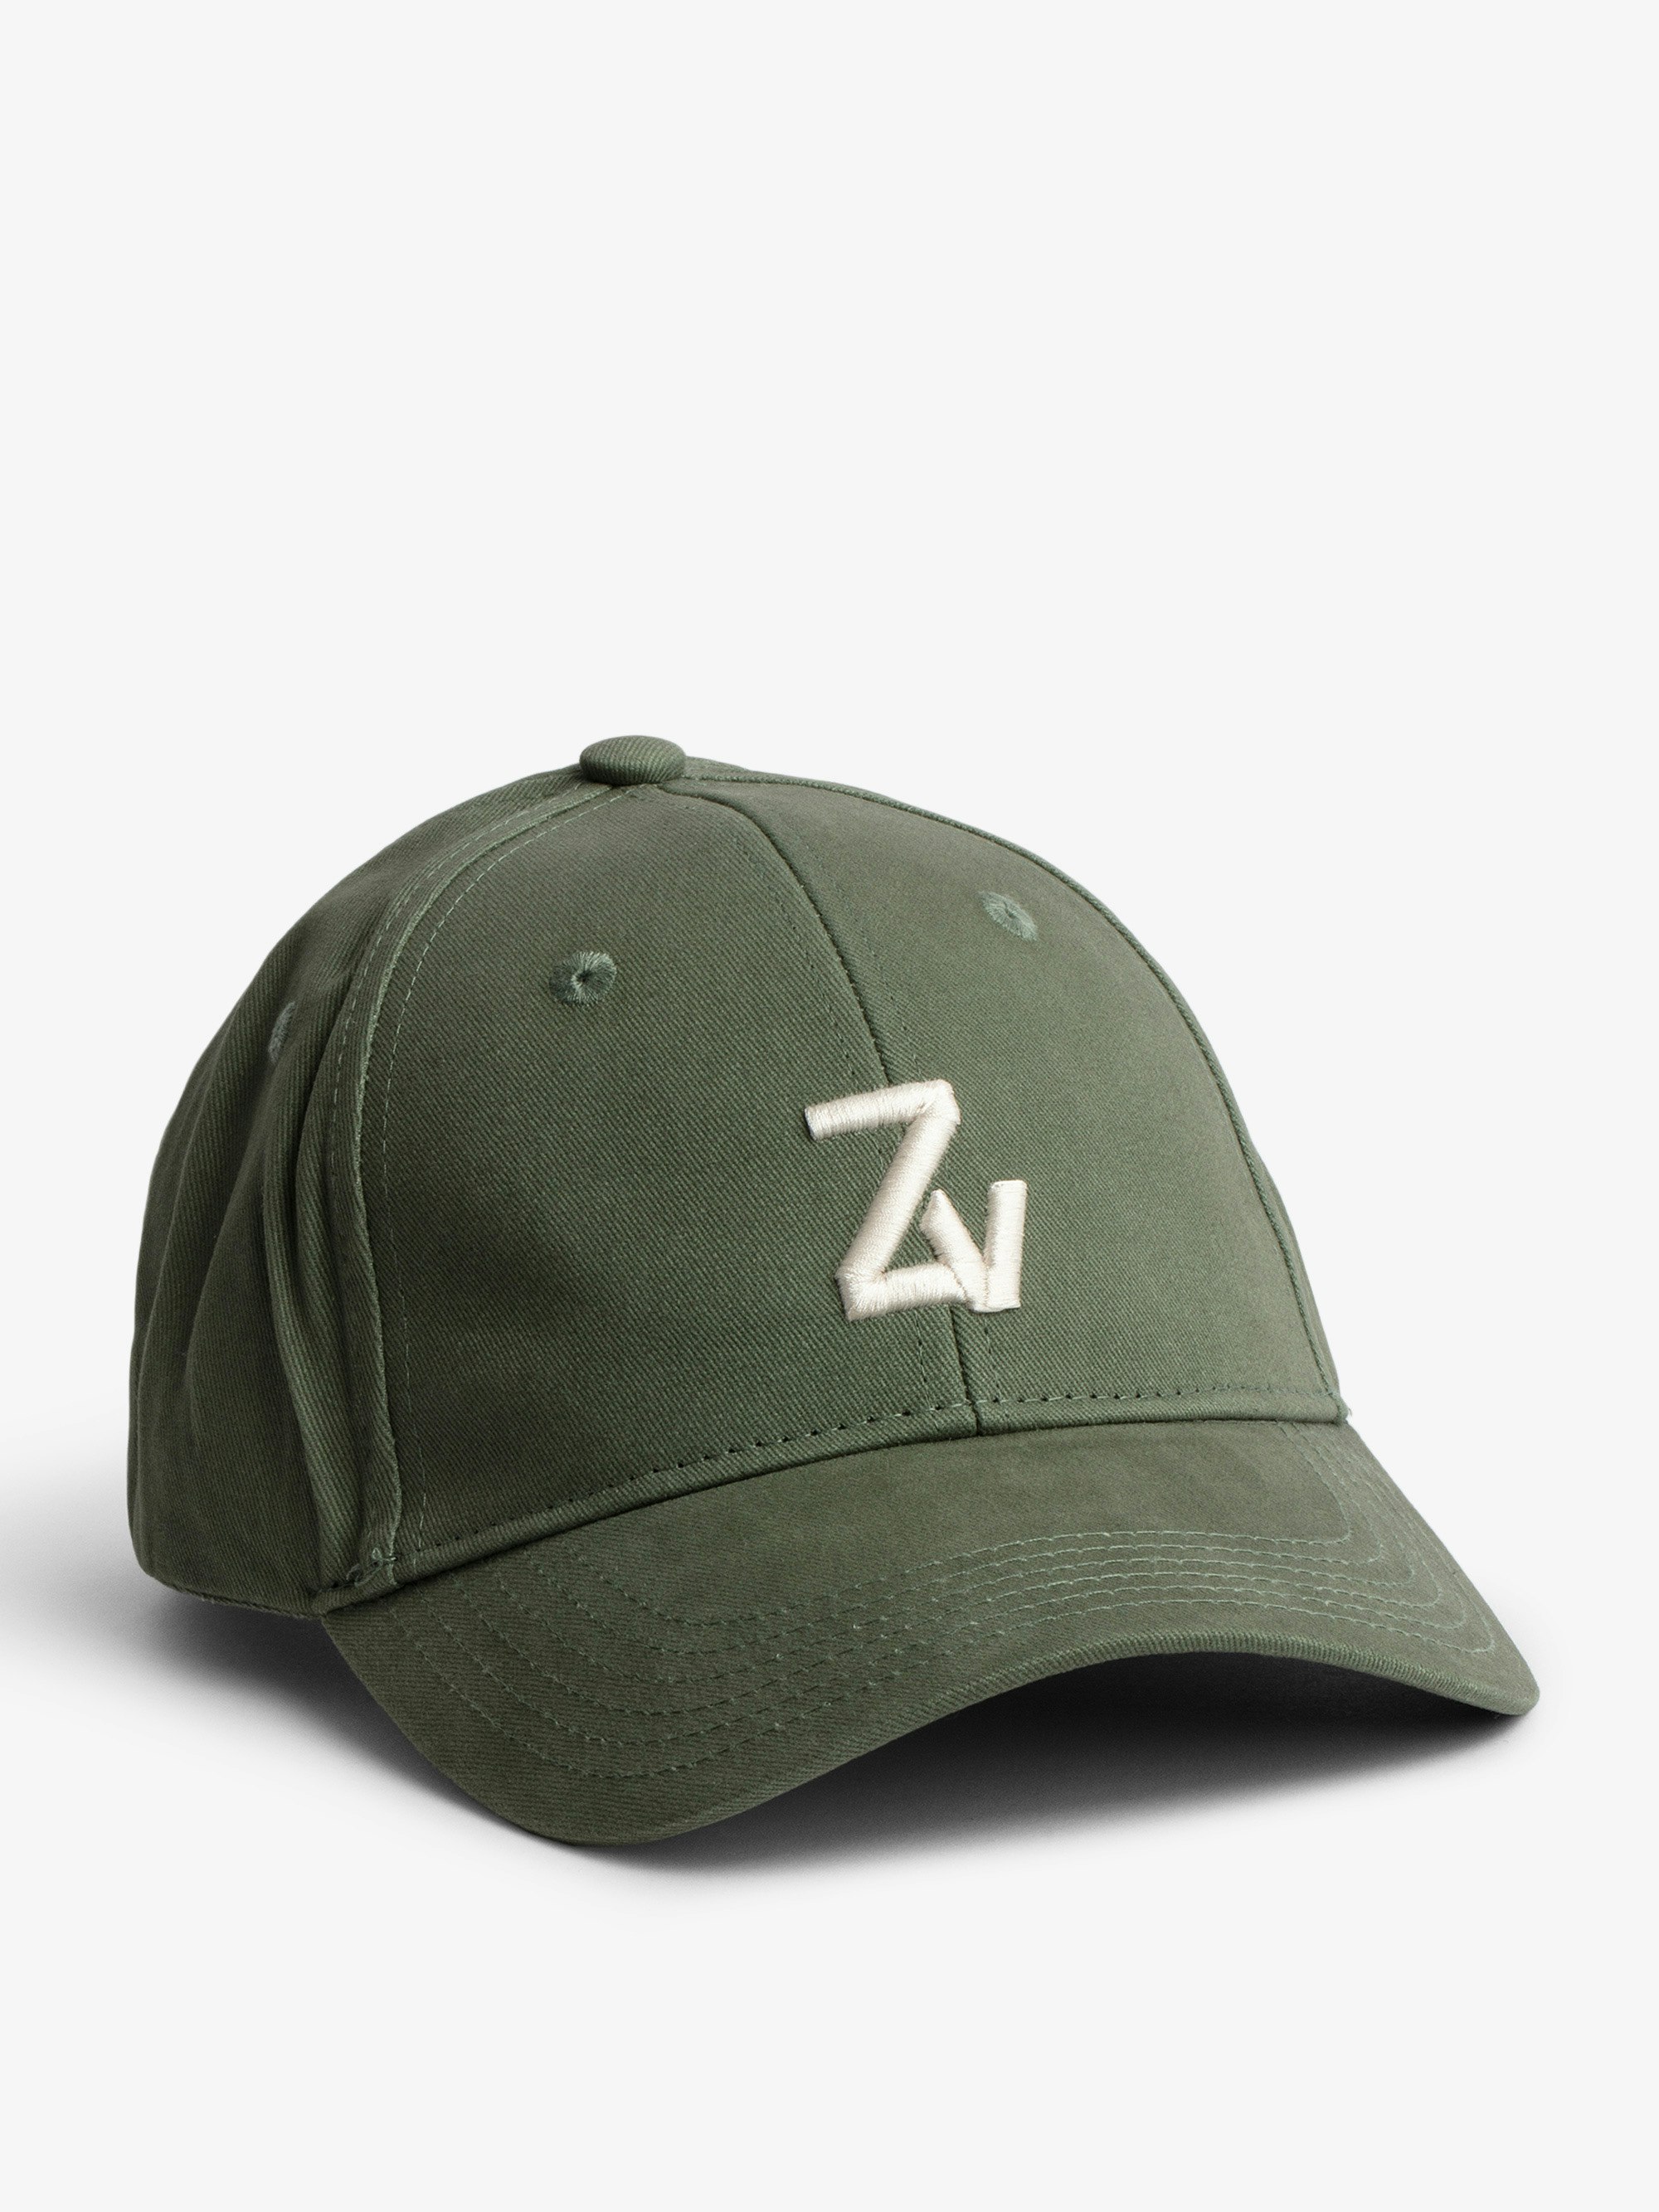 Cappellino Klelia ZV Initiale - Unisciti alla tribù Zadig&Voltaire con questo cappellino in cotone ricamato con le iniziali ZV.